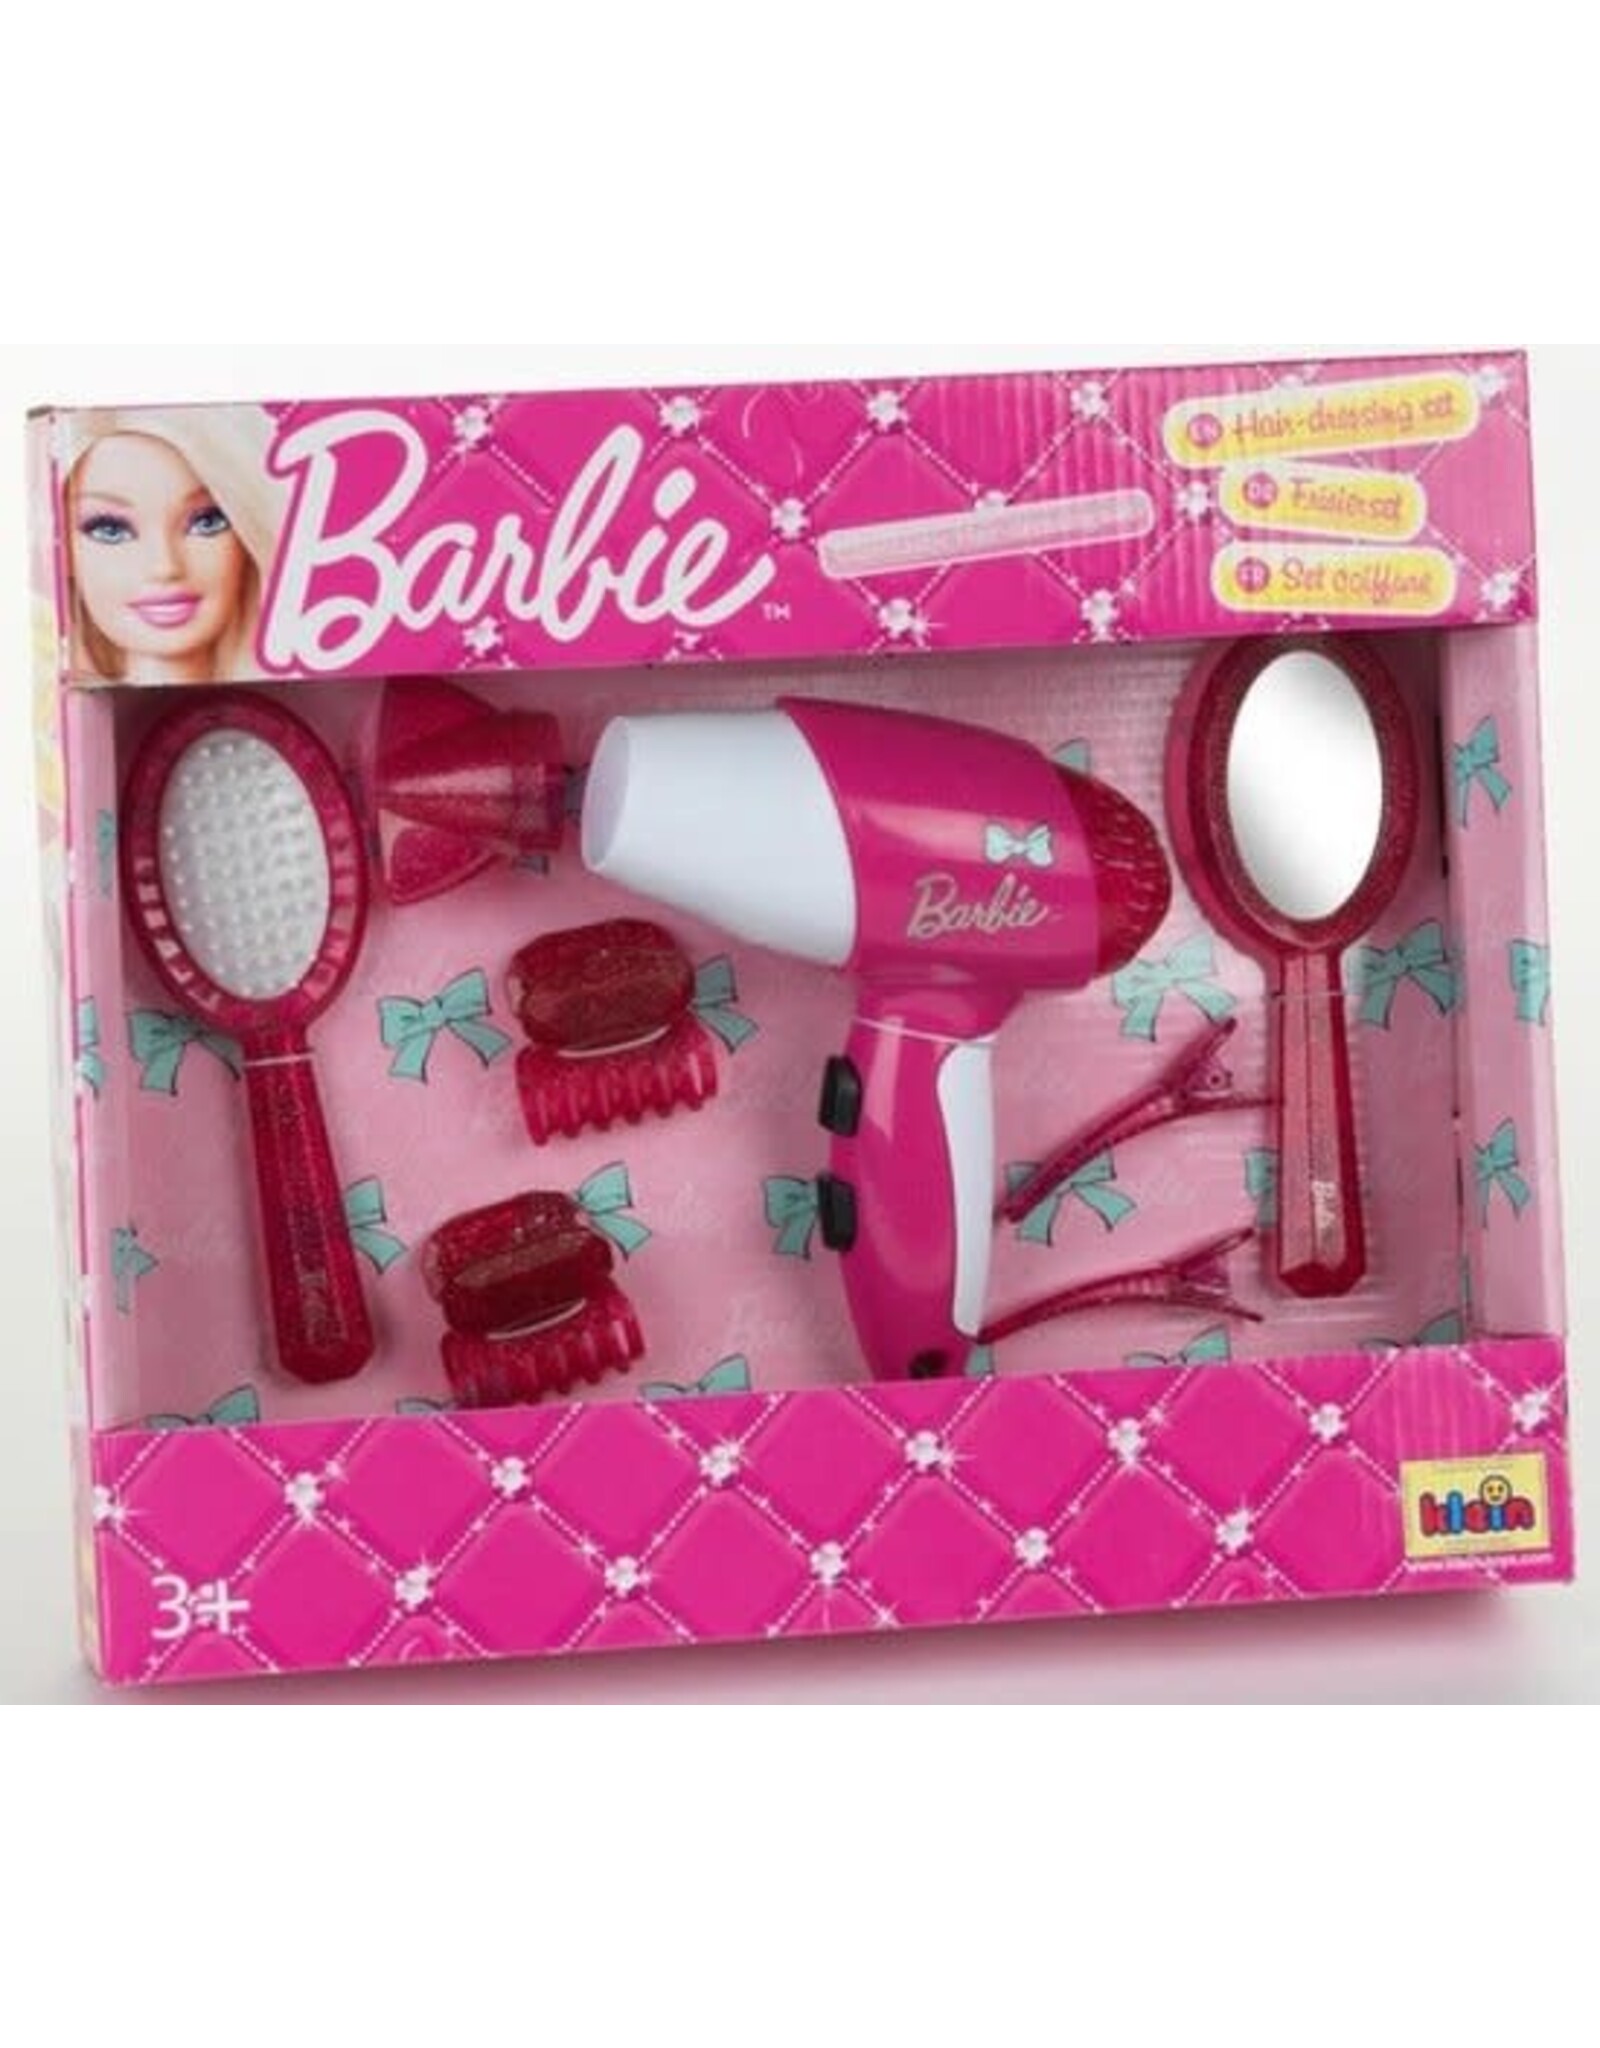 Barbie Klein Toys Barbie kapsalon met haardroger – blaast lucht en maakt geluid – inclusief haar accessoires